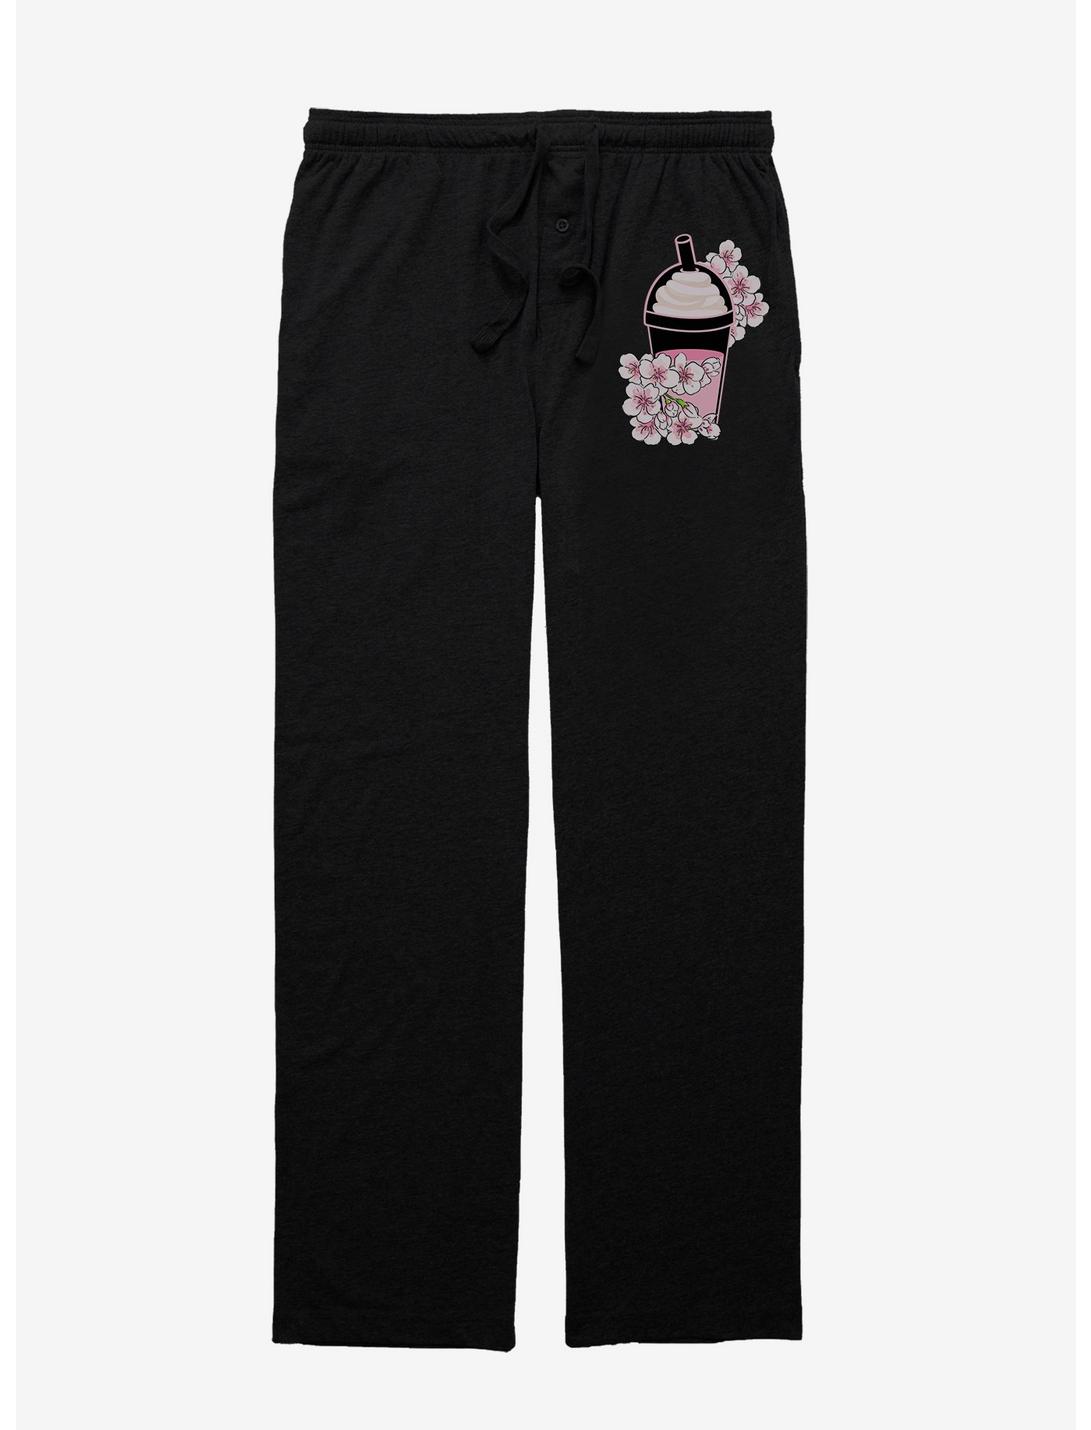 Floral Boba Pajama Pants, BLACK, hi-res